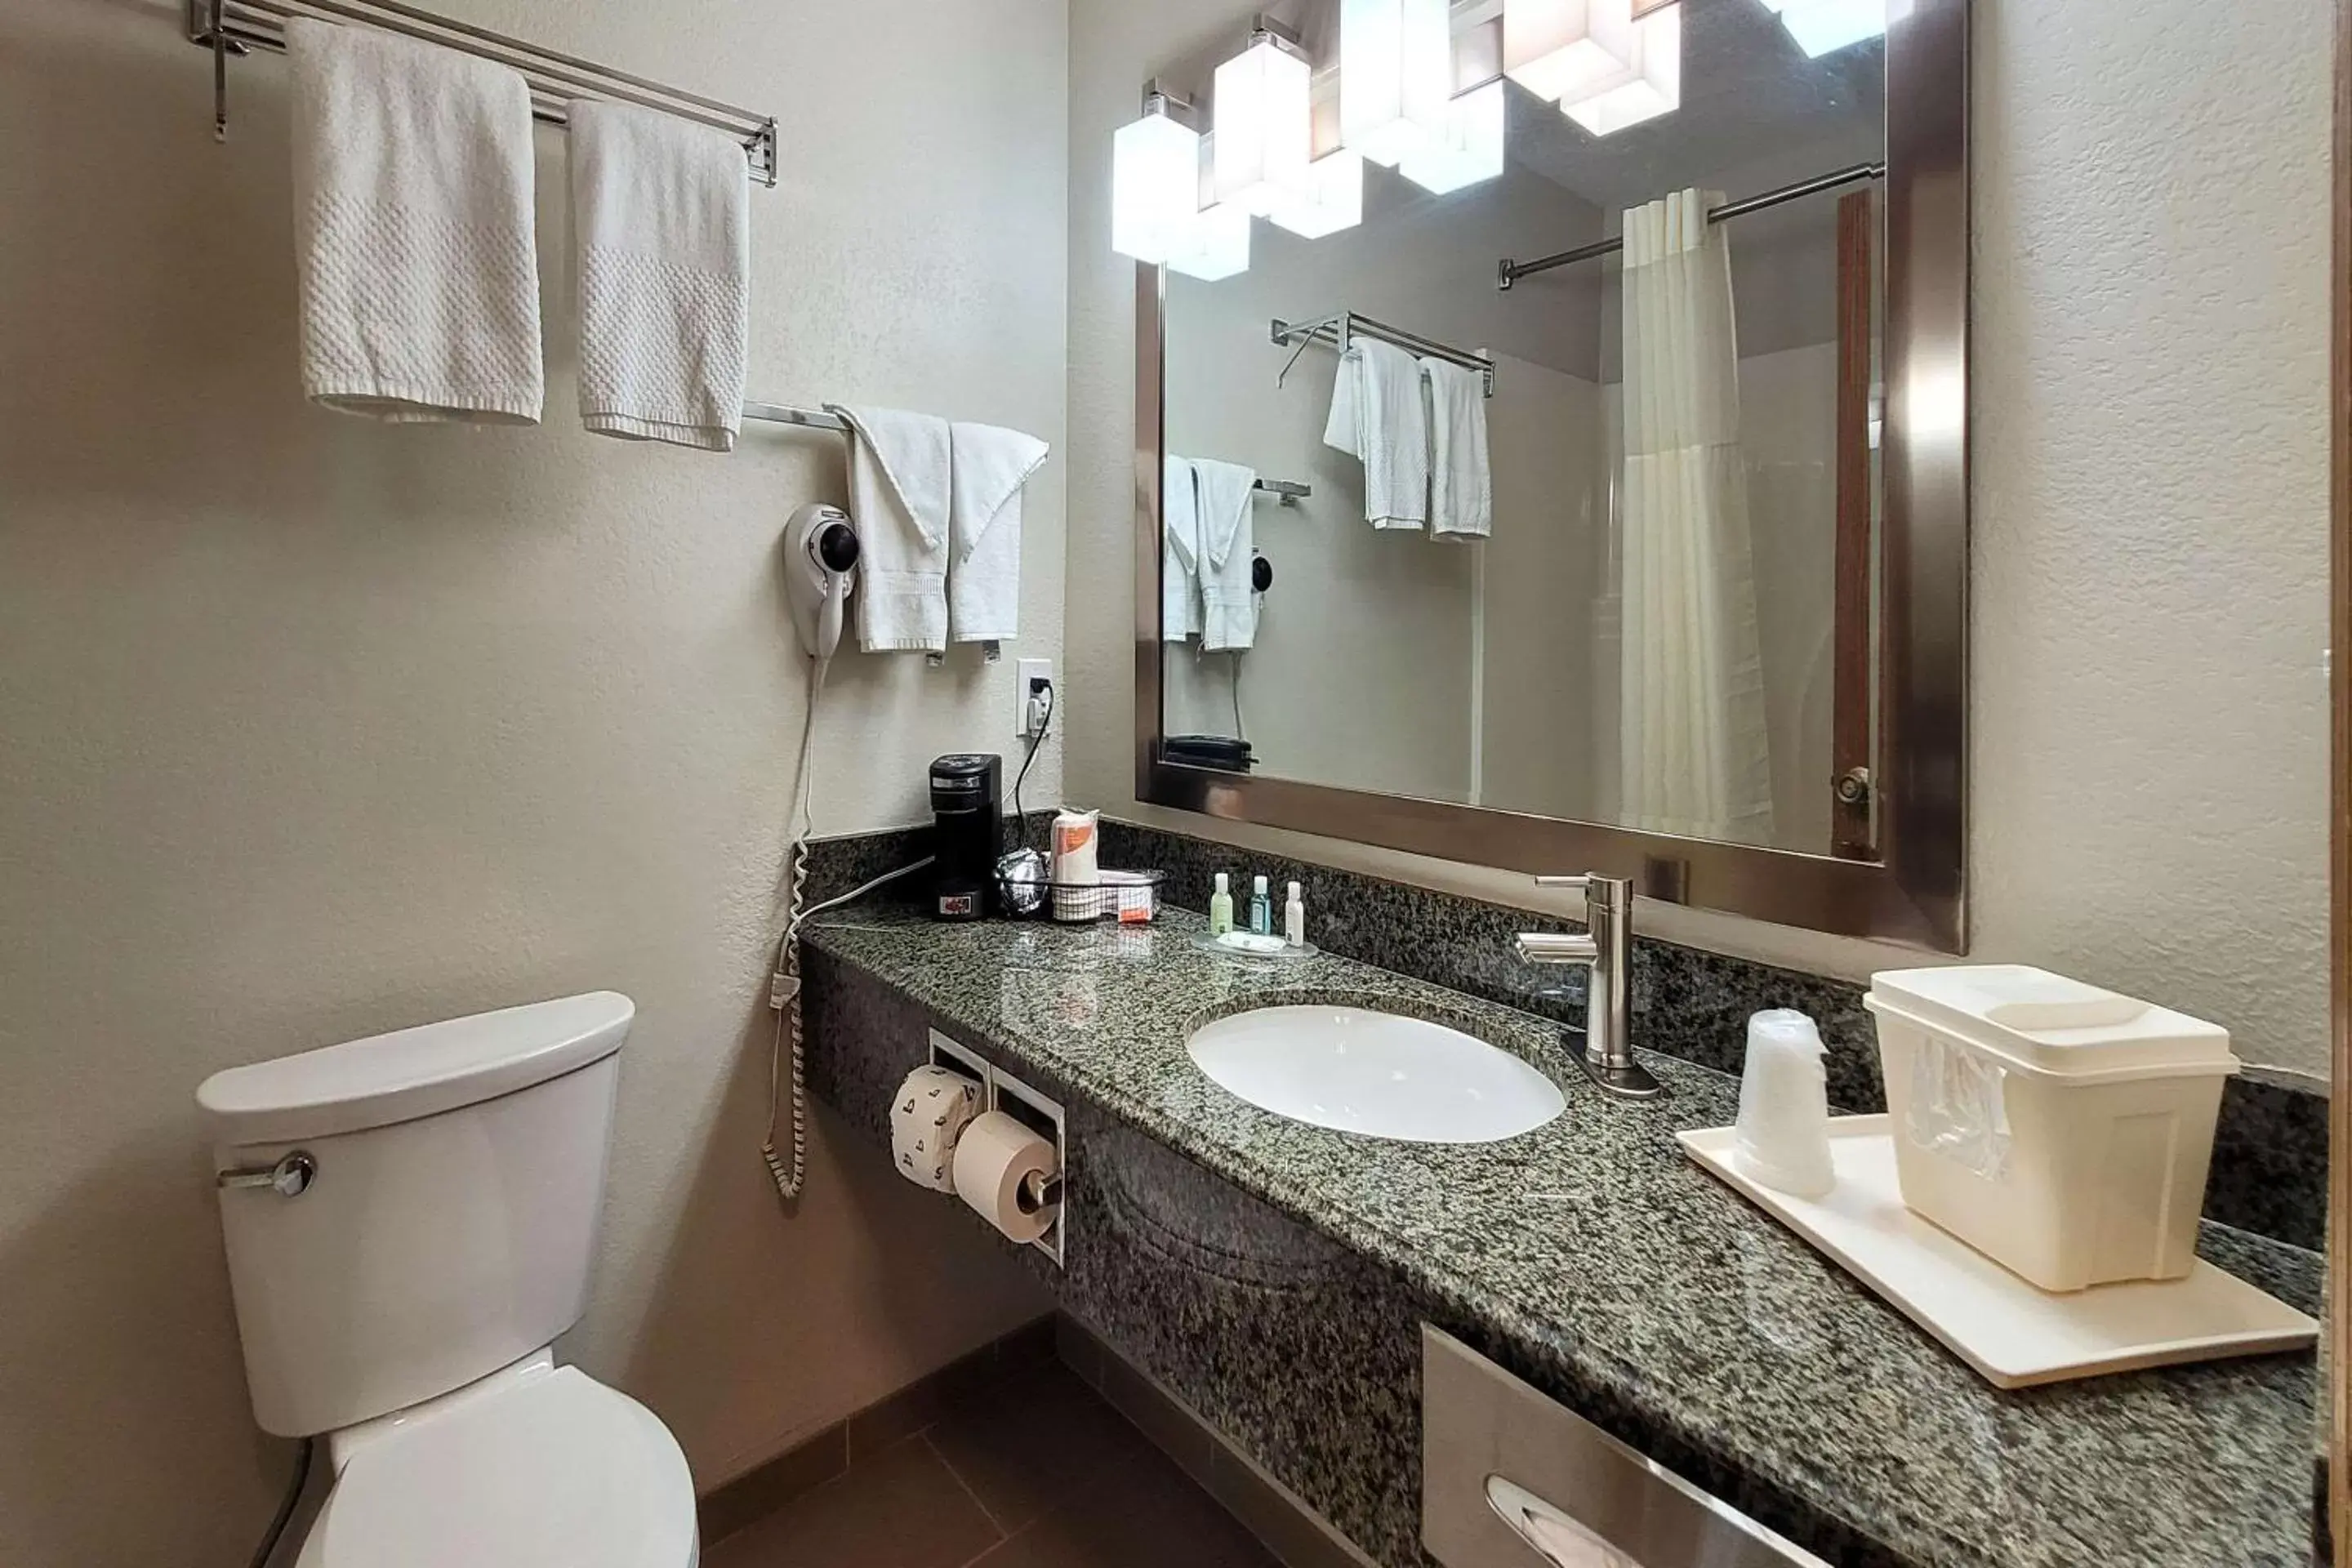 Bedroom, Bathroom in Quality Inn & Suites Marion